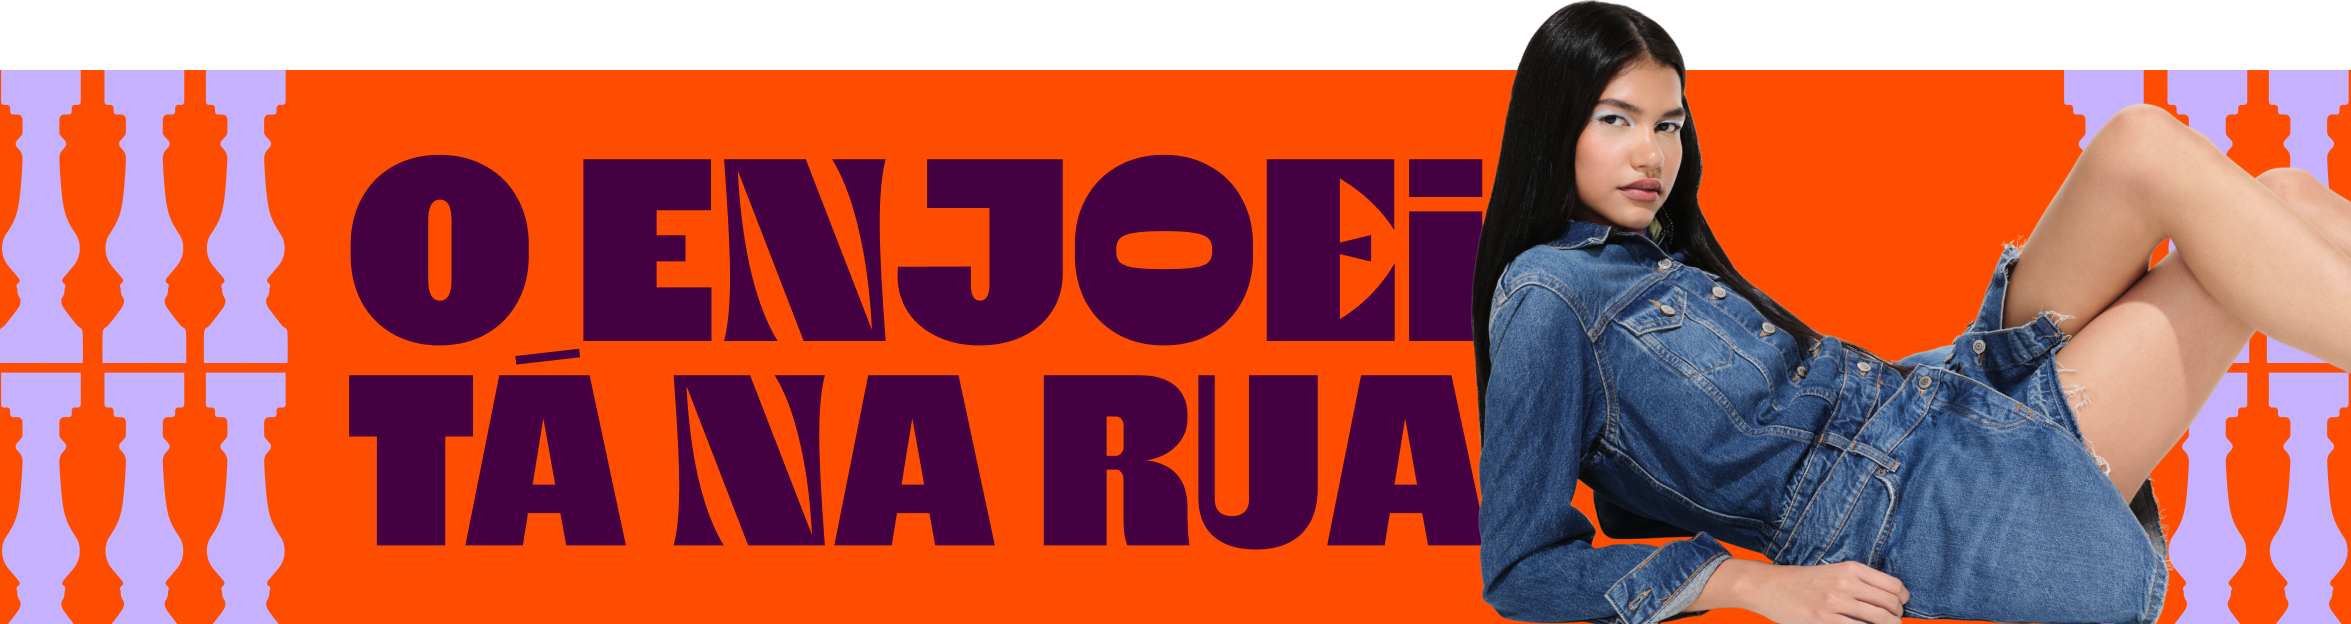 em banner horizontal de cor laranja, há a frase "enjoei tá na rua", escrita em cor açaí. o banner possui fundo laranja com interferência de imagens de balaústres, na cor lilás.